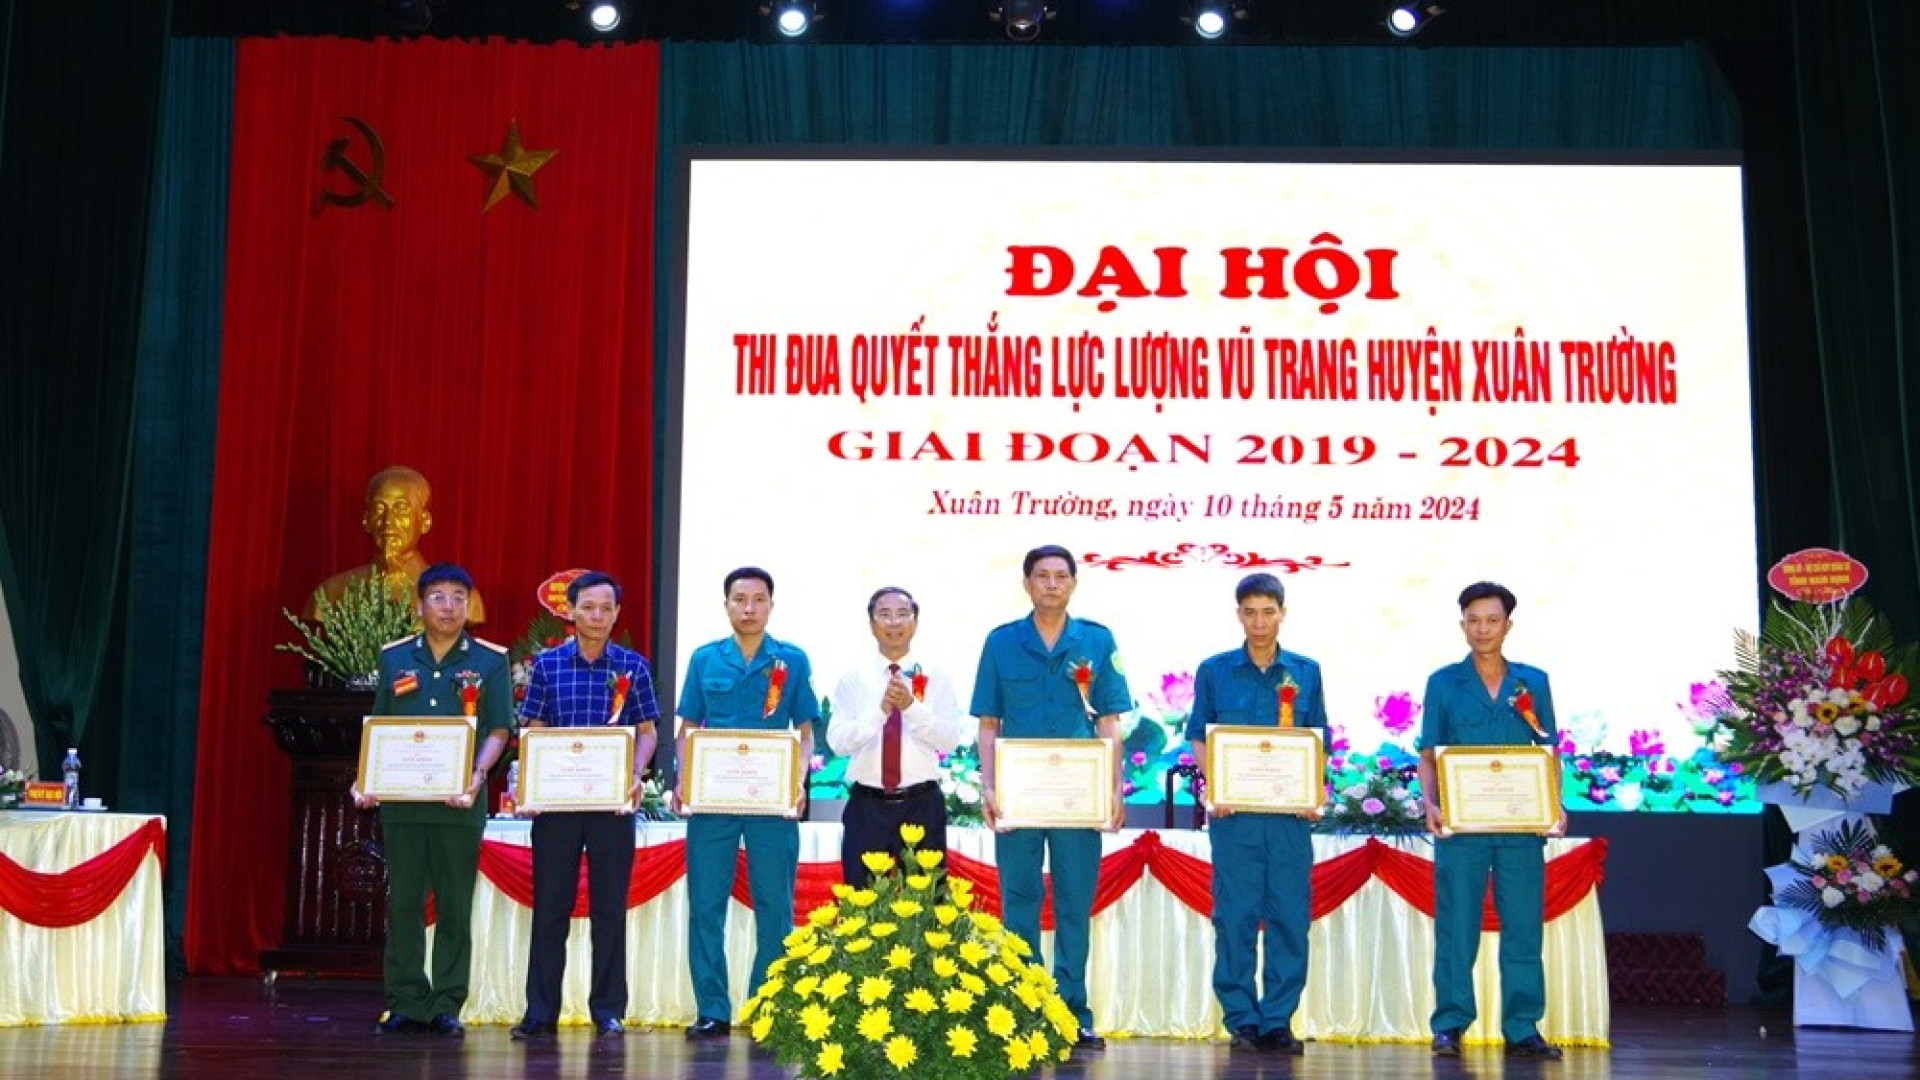 Đại hội Thi đua Quyết thắng LLVT huyện Xuân Trường giai đoạn 2019-2024